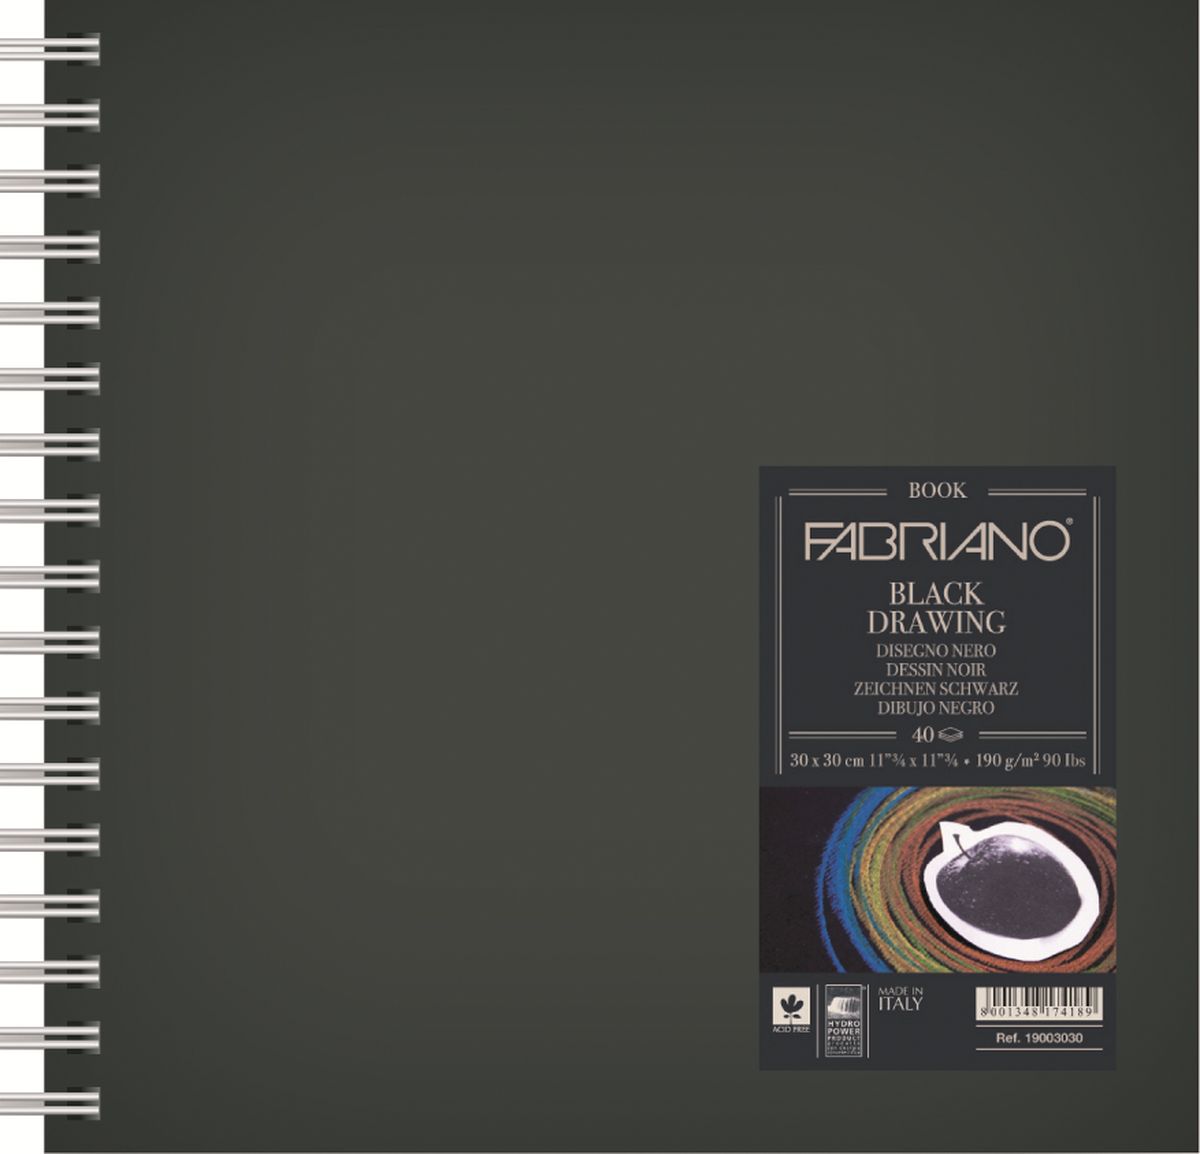 Fabriano Блокнот для зарисовок BlackDrawingBook цвет черный 40 листов 19003030